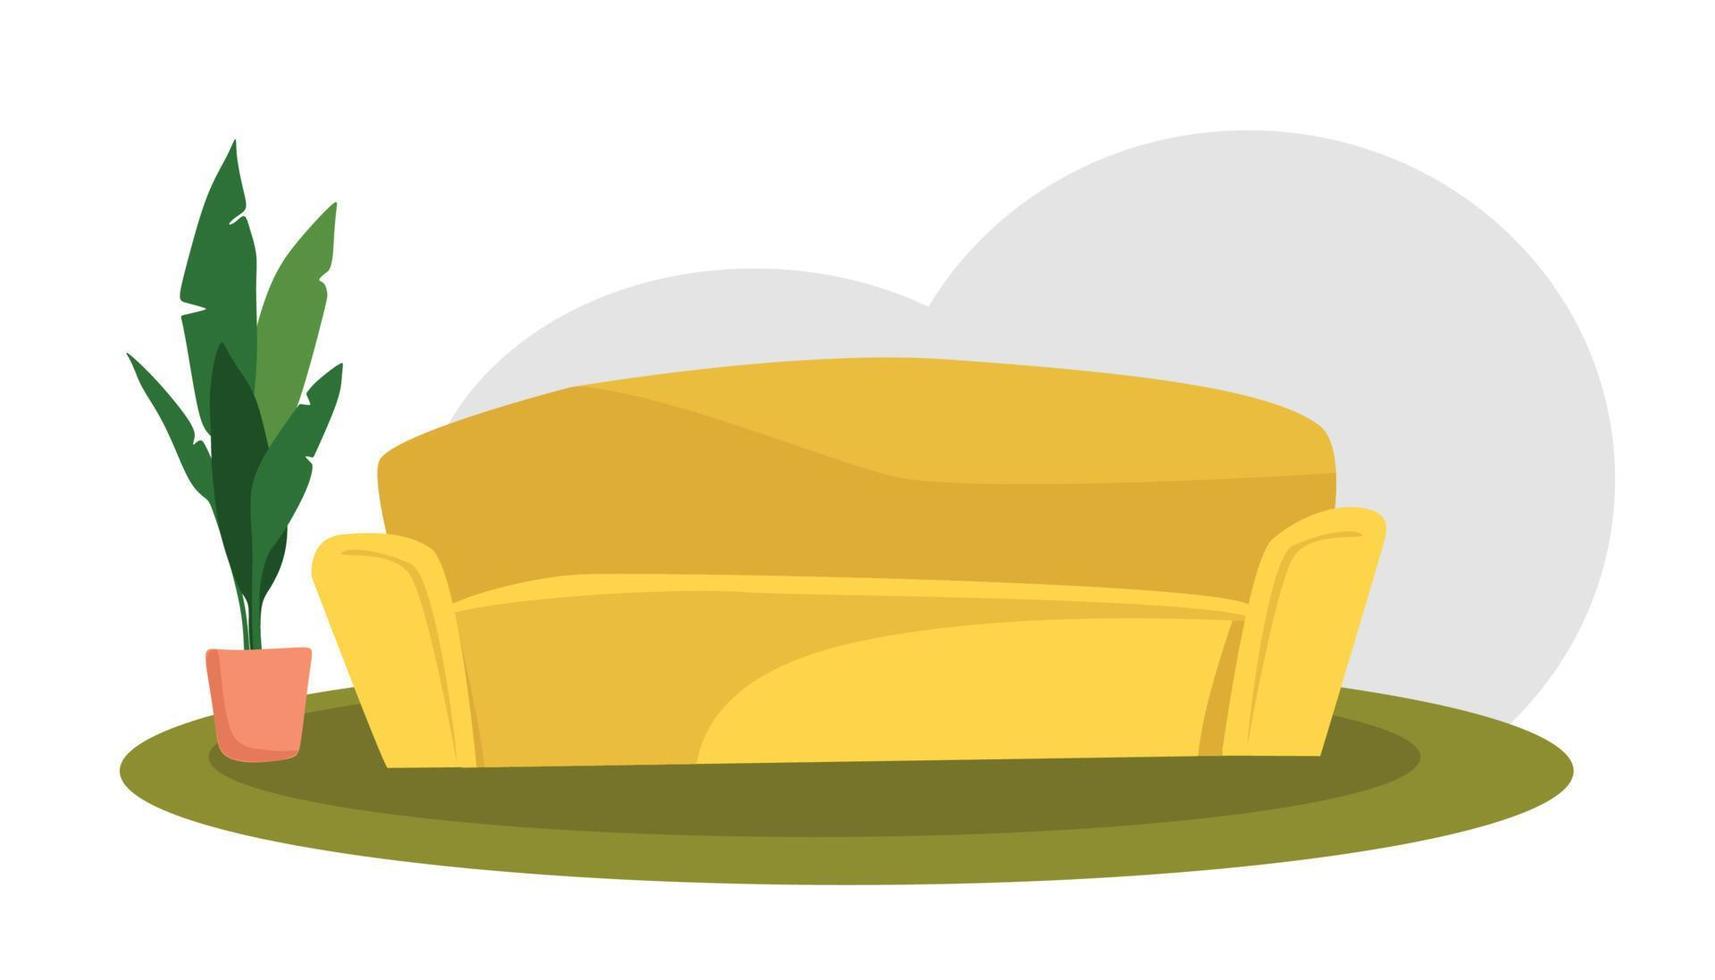 sofá amarelo macio e aconchegante. ilustração vetorial dos desenhos animados. o conceito de conforto em casa. vetor